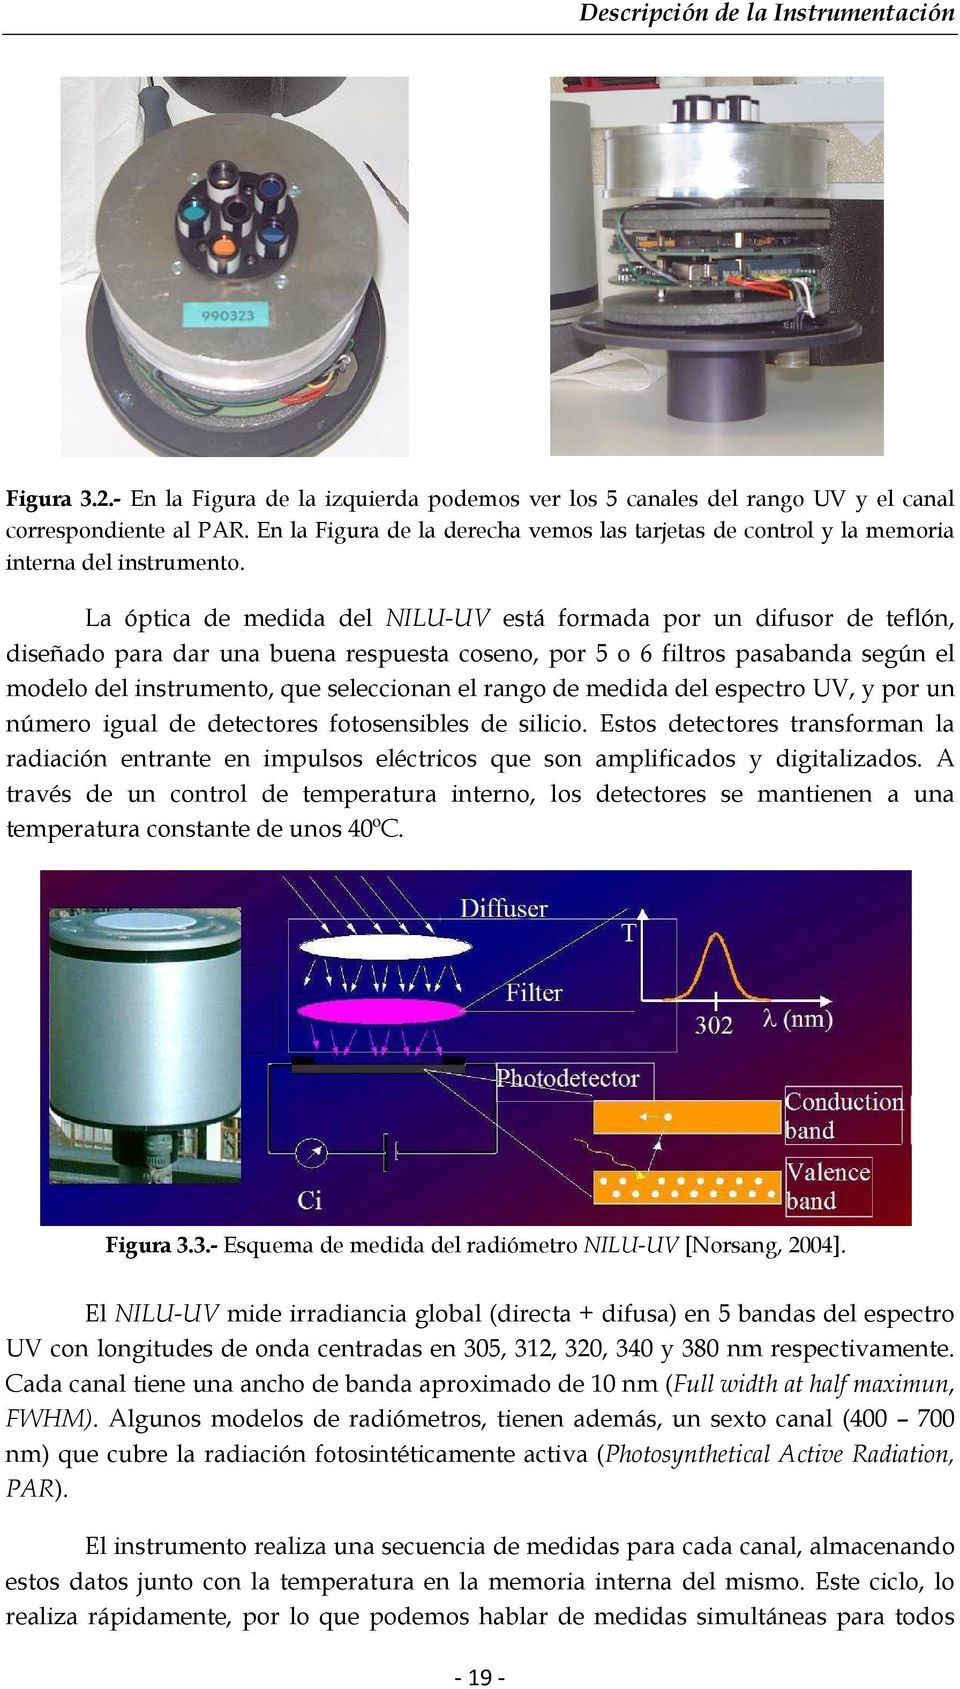 La óptica de medida del NILU-UV está formada por un difusor de teflón, diseñado para dar una buena respuesta coseno, por 5 o 6 filtros pasabanda según el modelo del instrumento, que seleccionan el